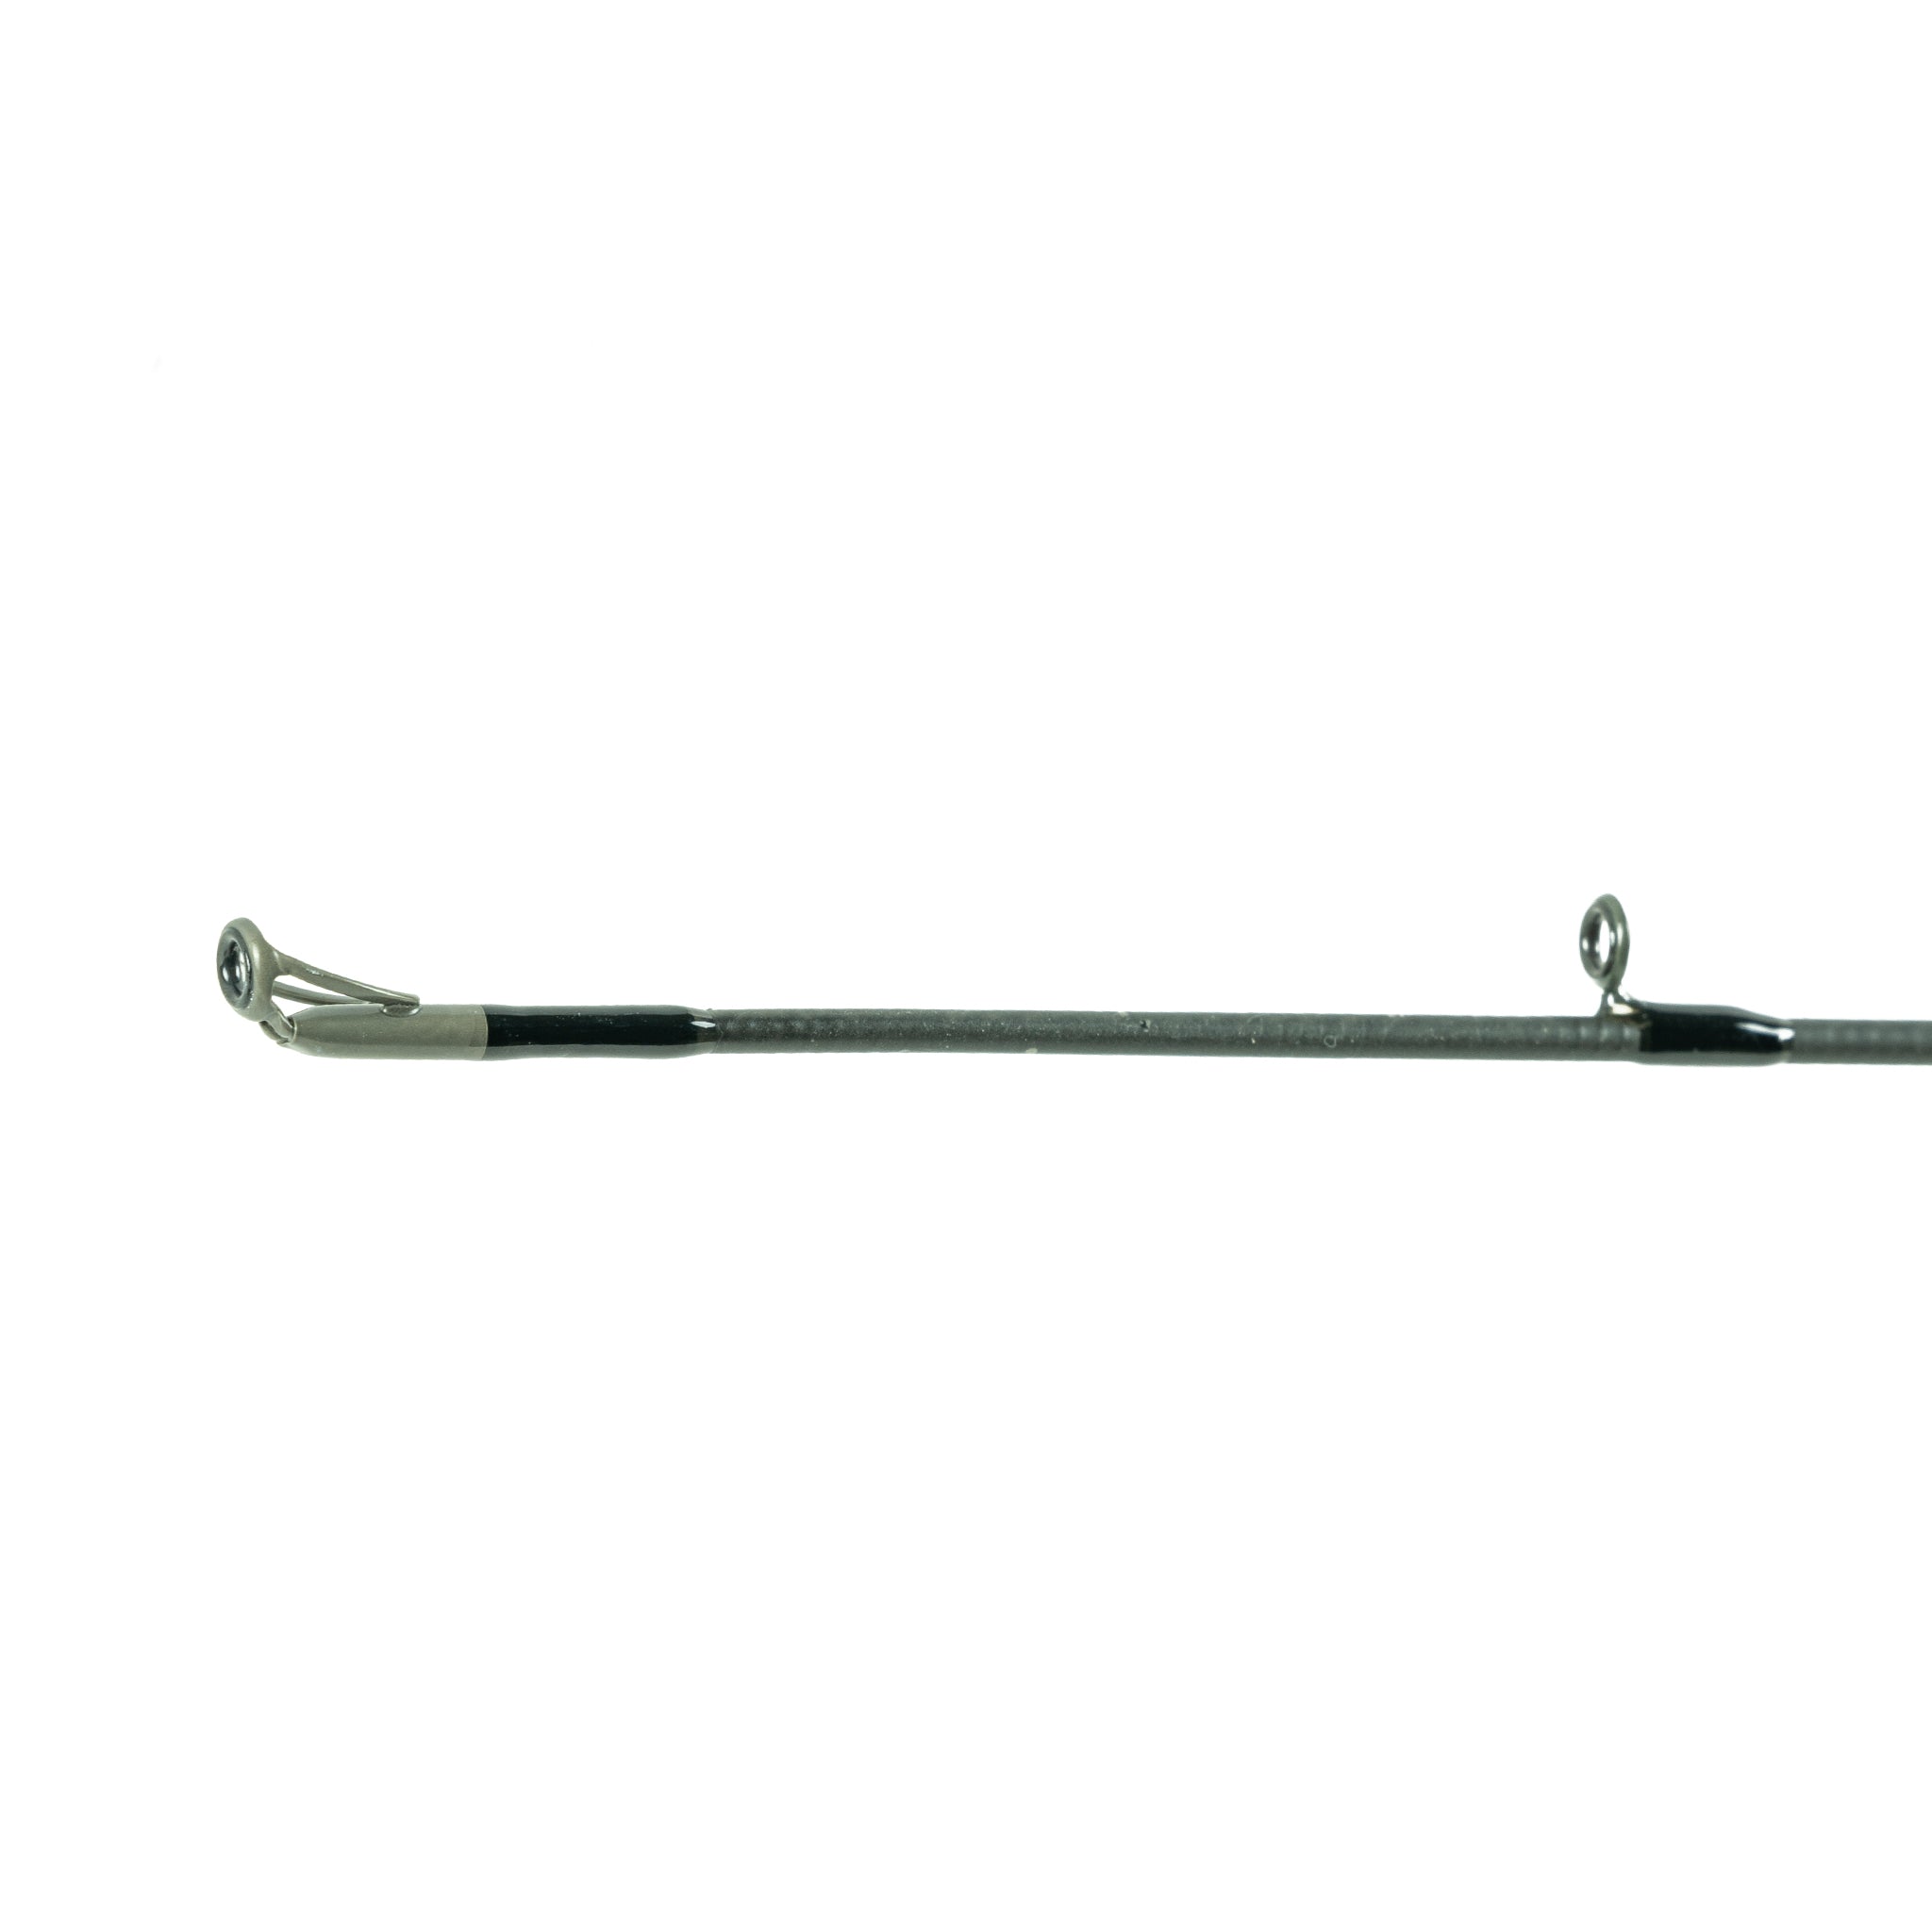 WSWB710XHMF - 7'10 Xtra-Heavy Mod-Fast Casting Rod